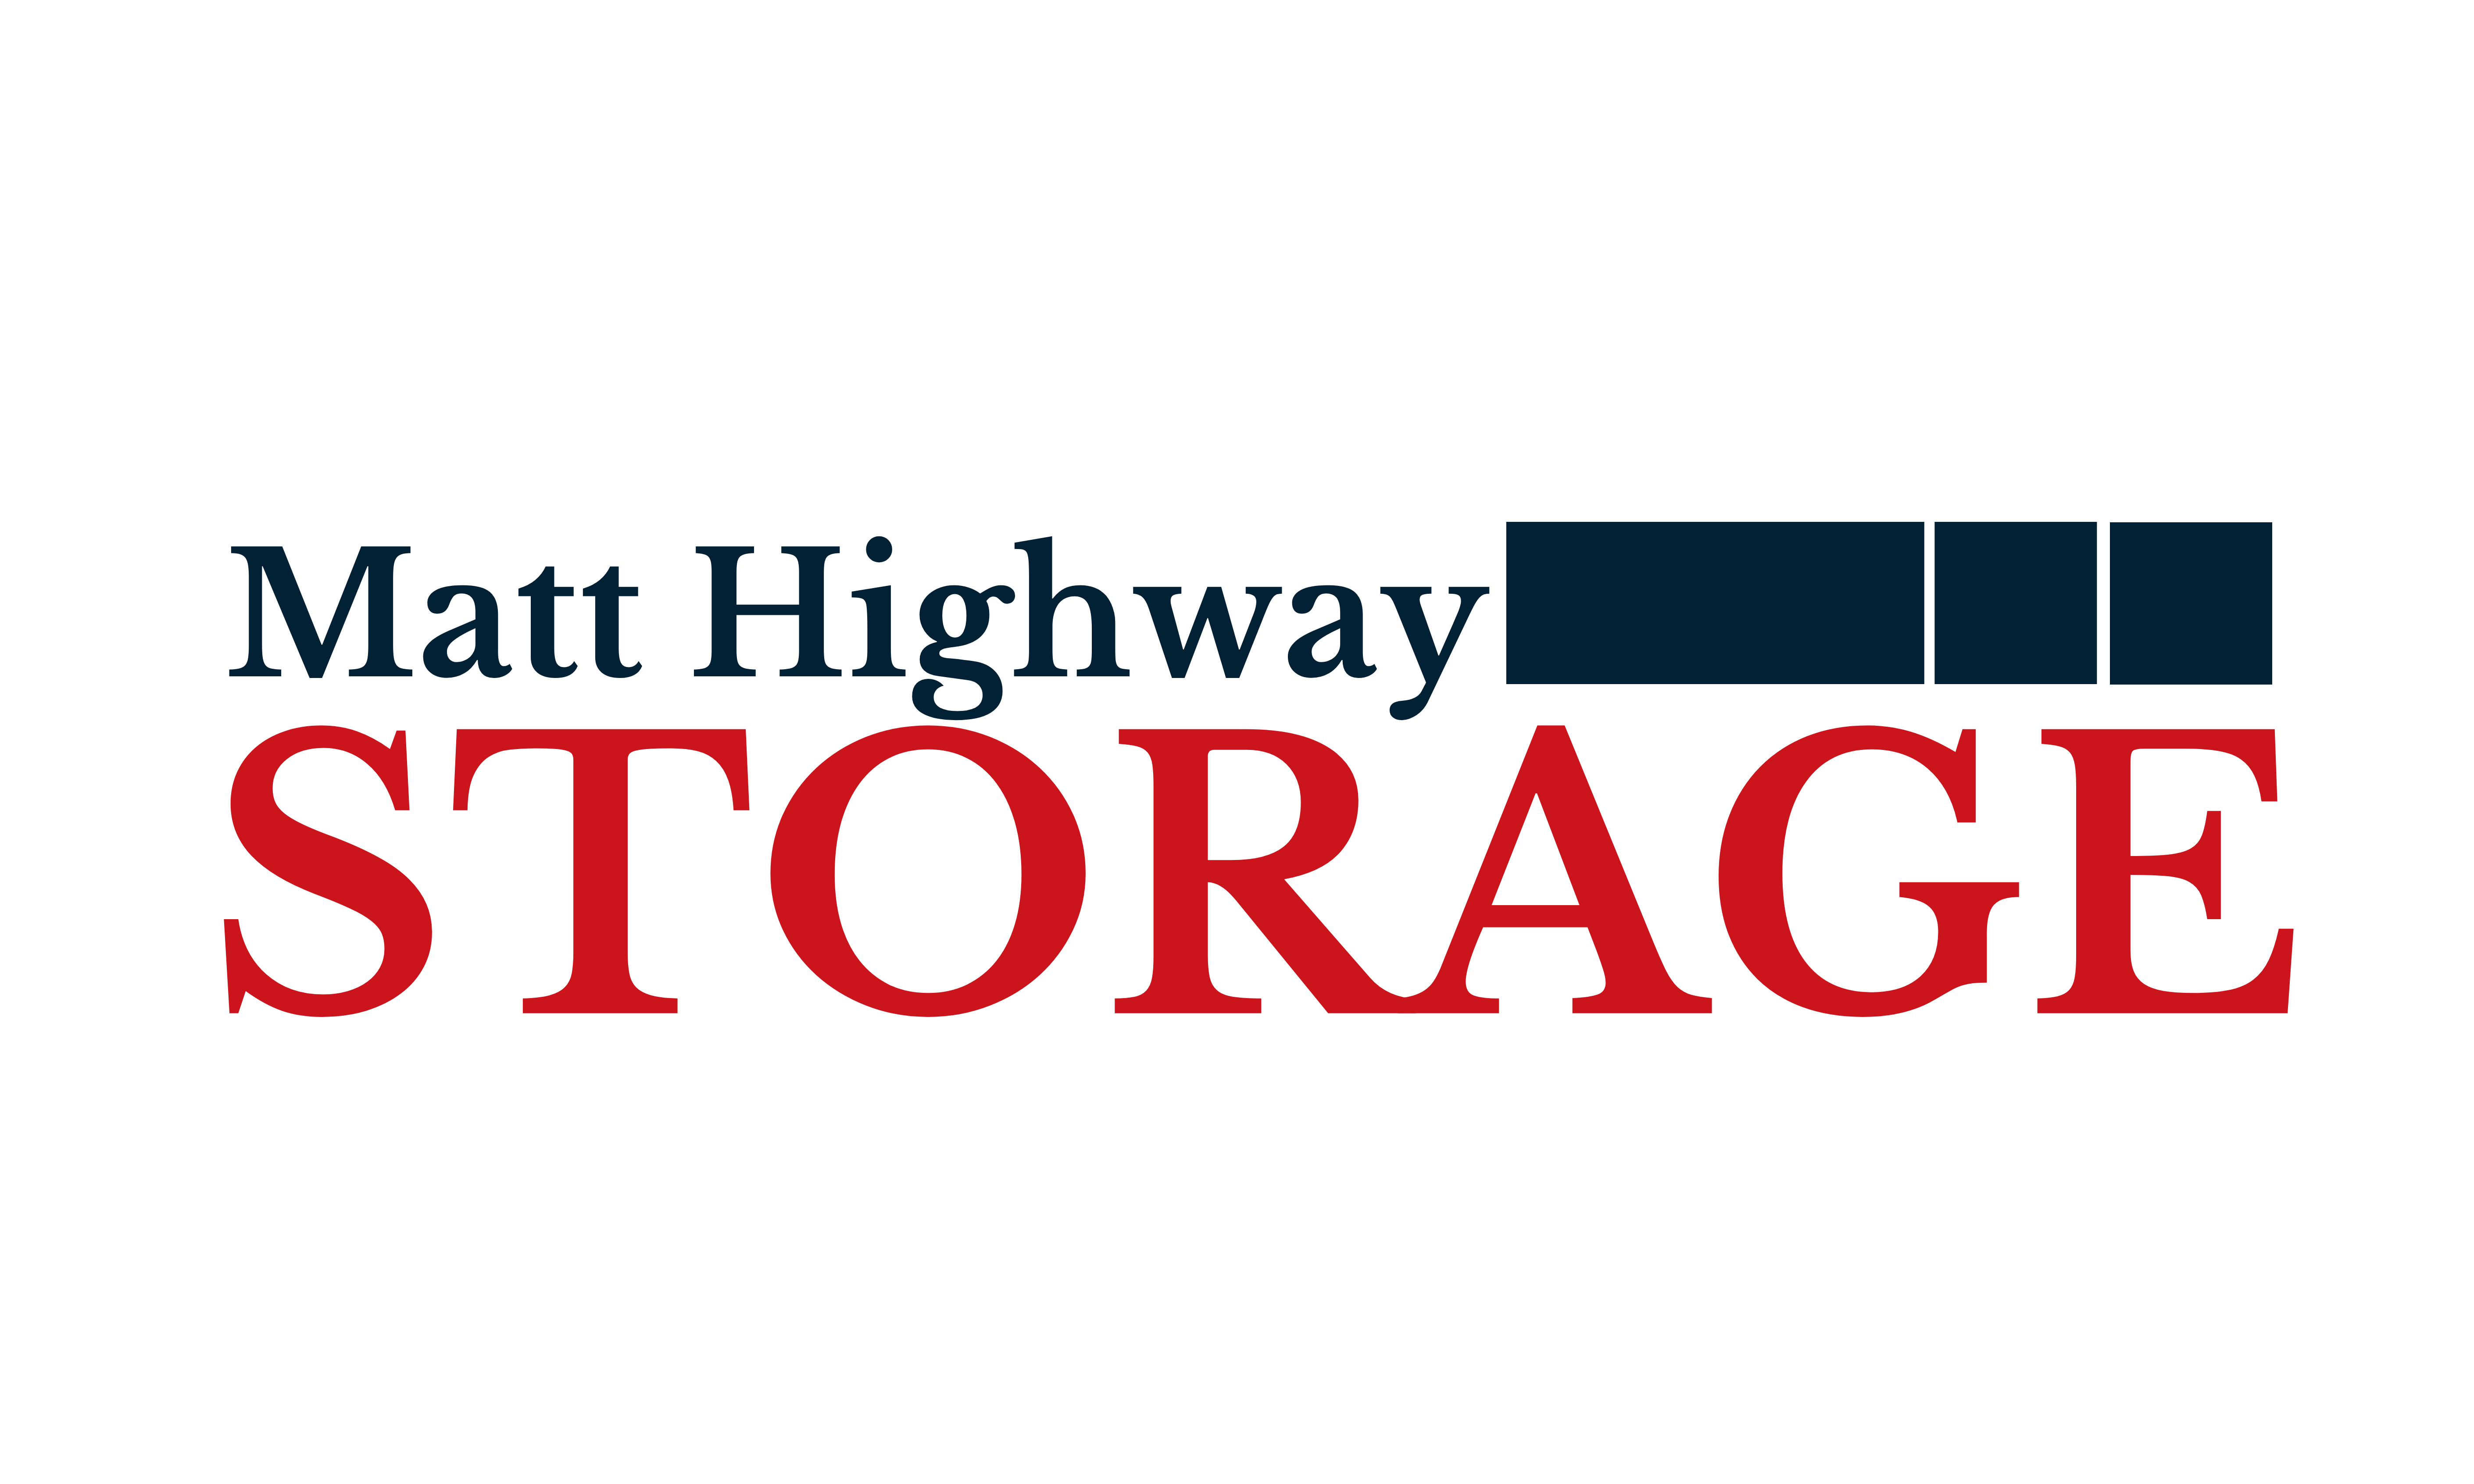 Matt Highway Storage.